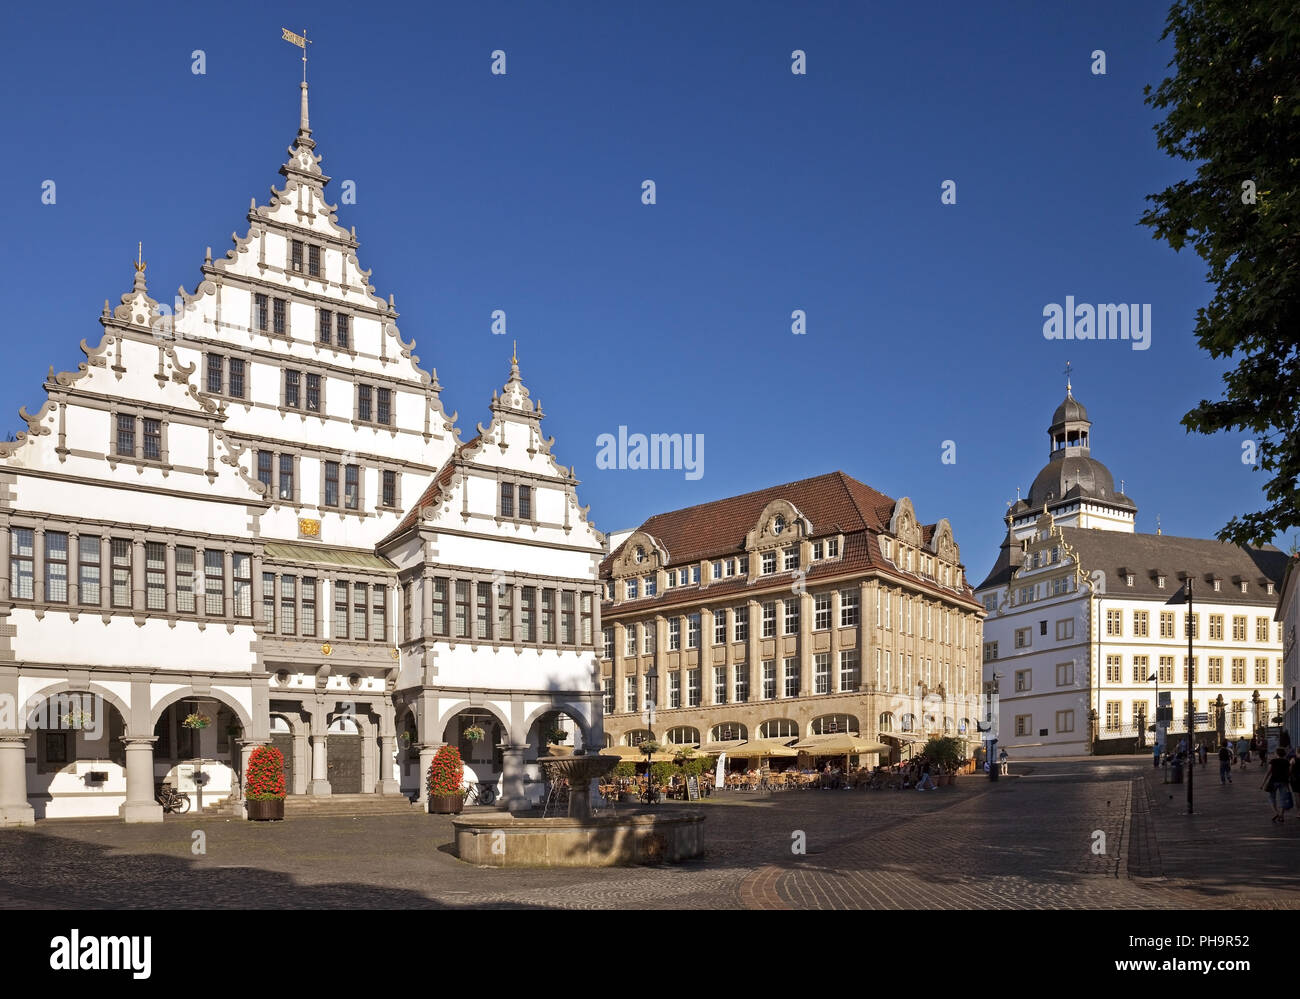 Rathaus am Rathausplatz, Paderborn, Ostwestfalen, NRW, Deutschland Stockfoto